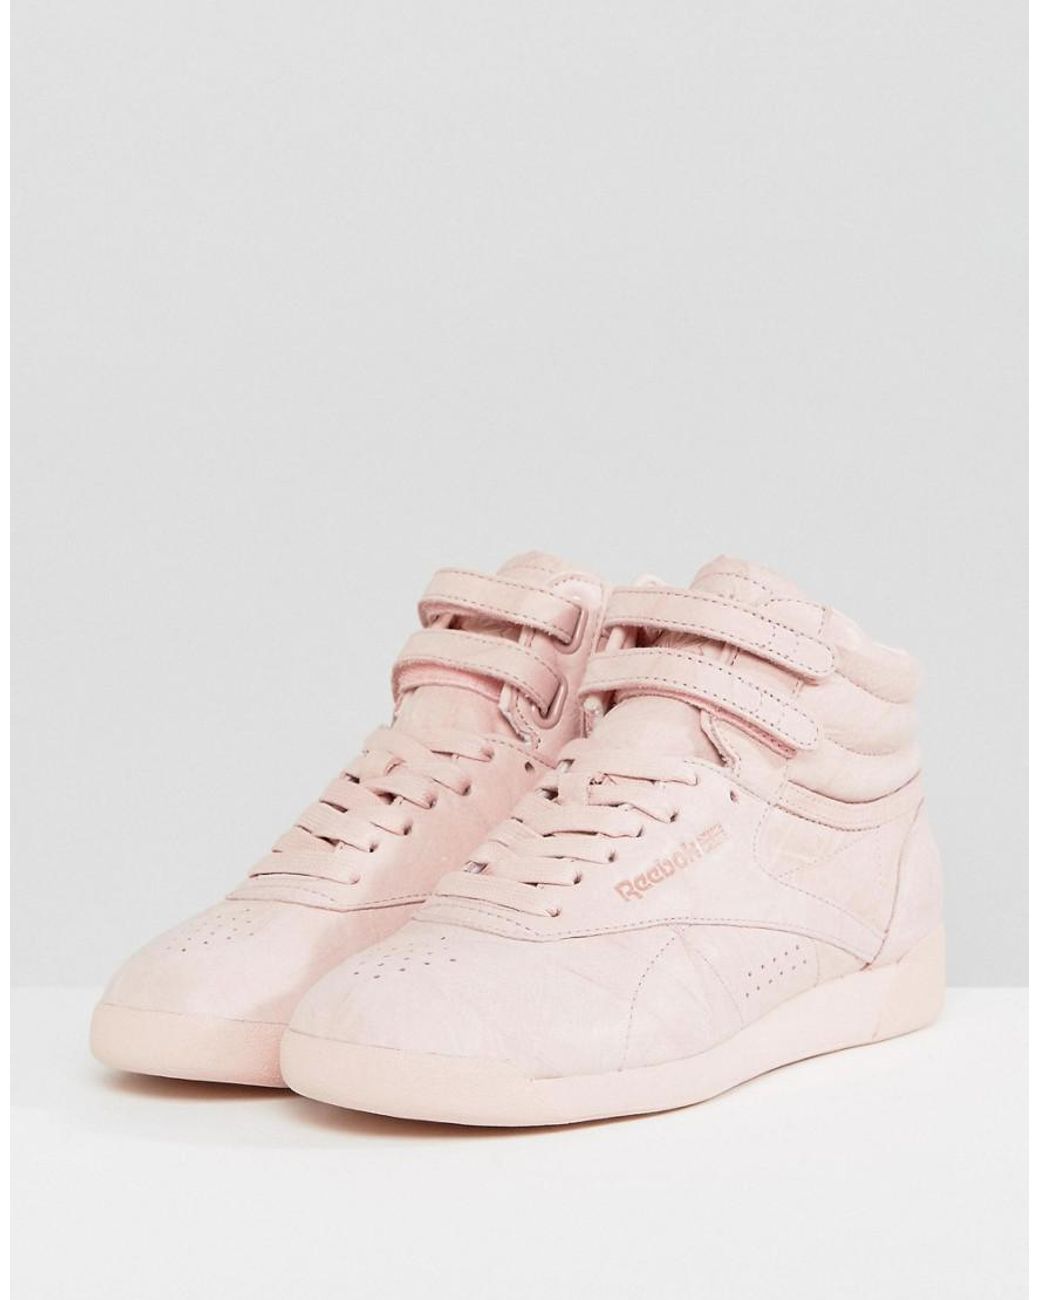 Reebok Freestyle Nubuck High Top Sneakers in Pink | Lyst UK